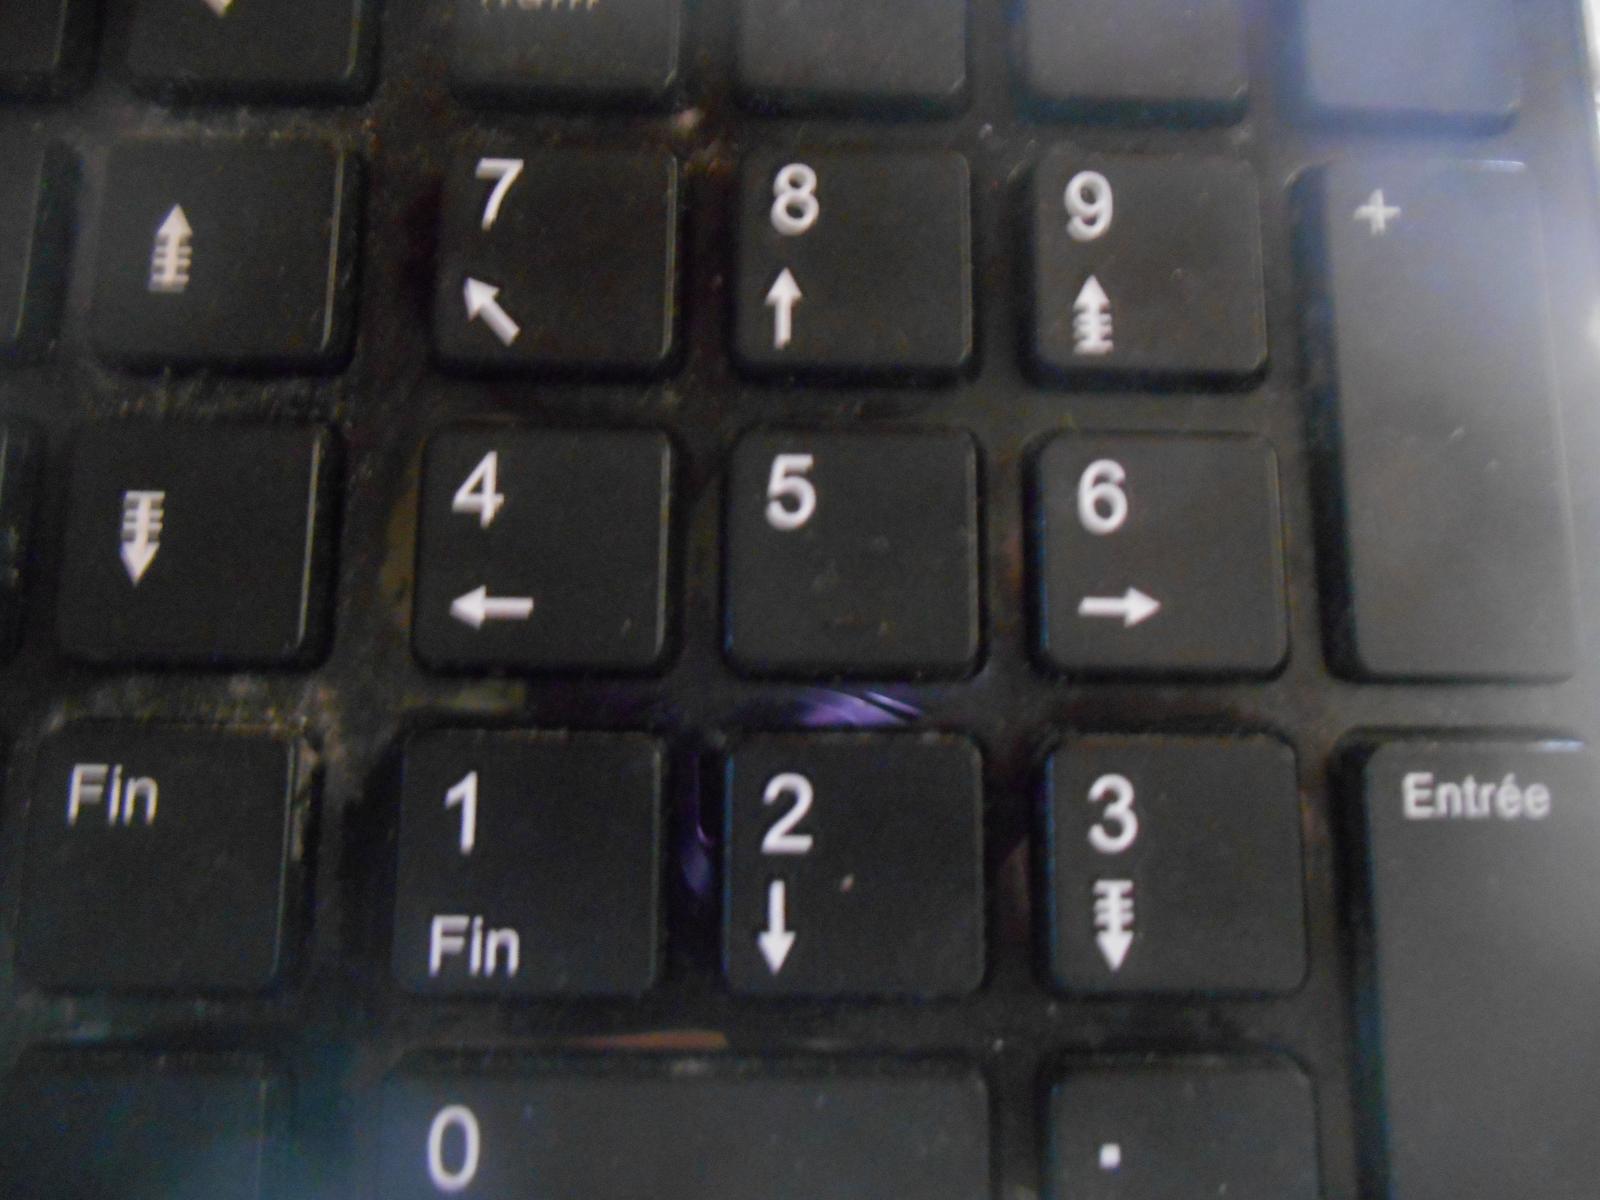 Mon clavier (Pavé numérique) vu de près (Les Moutiers en Retz)